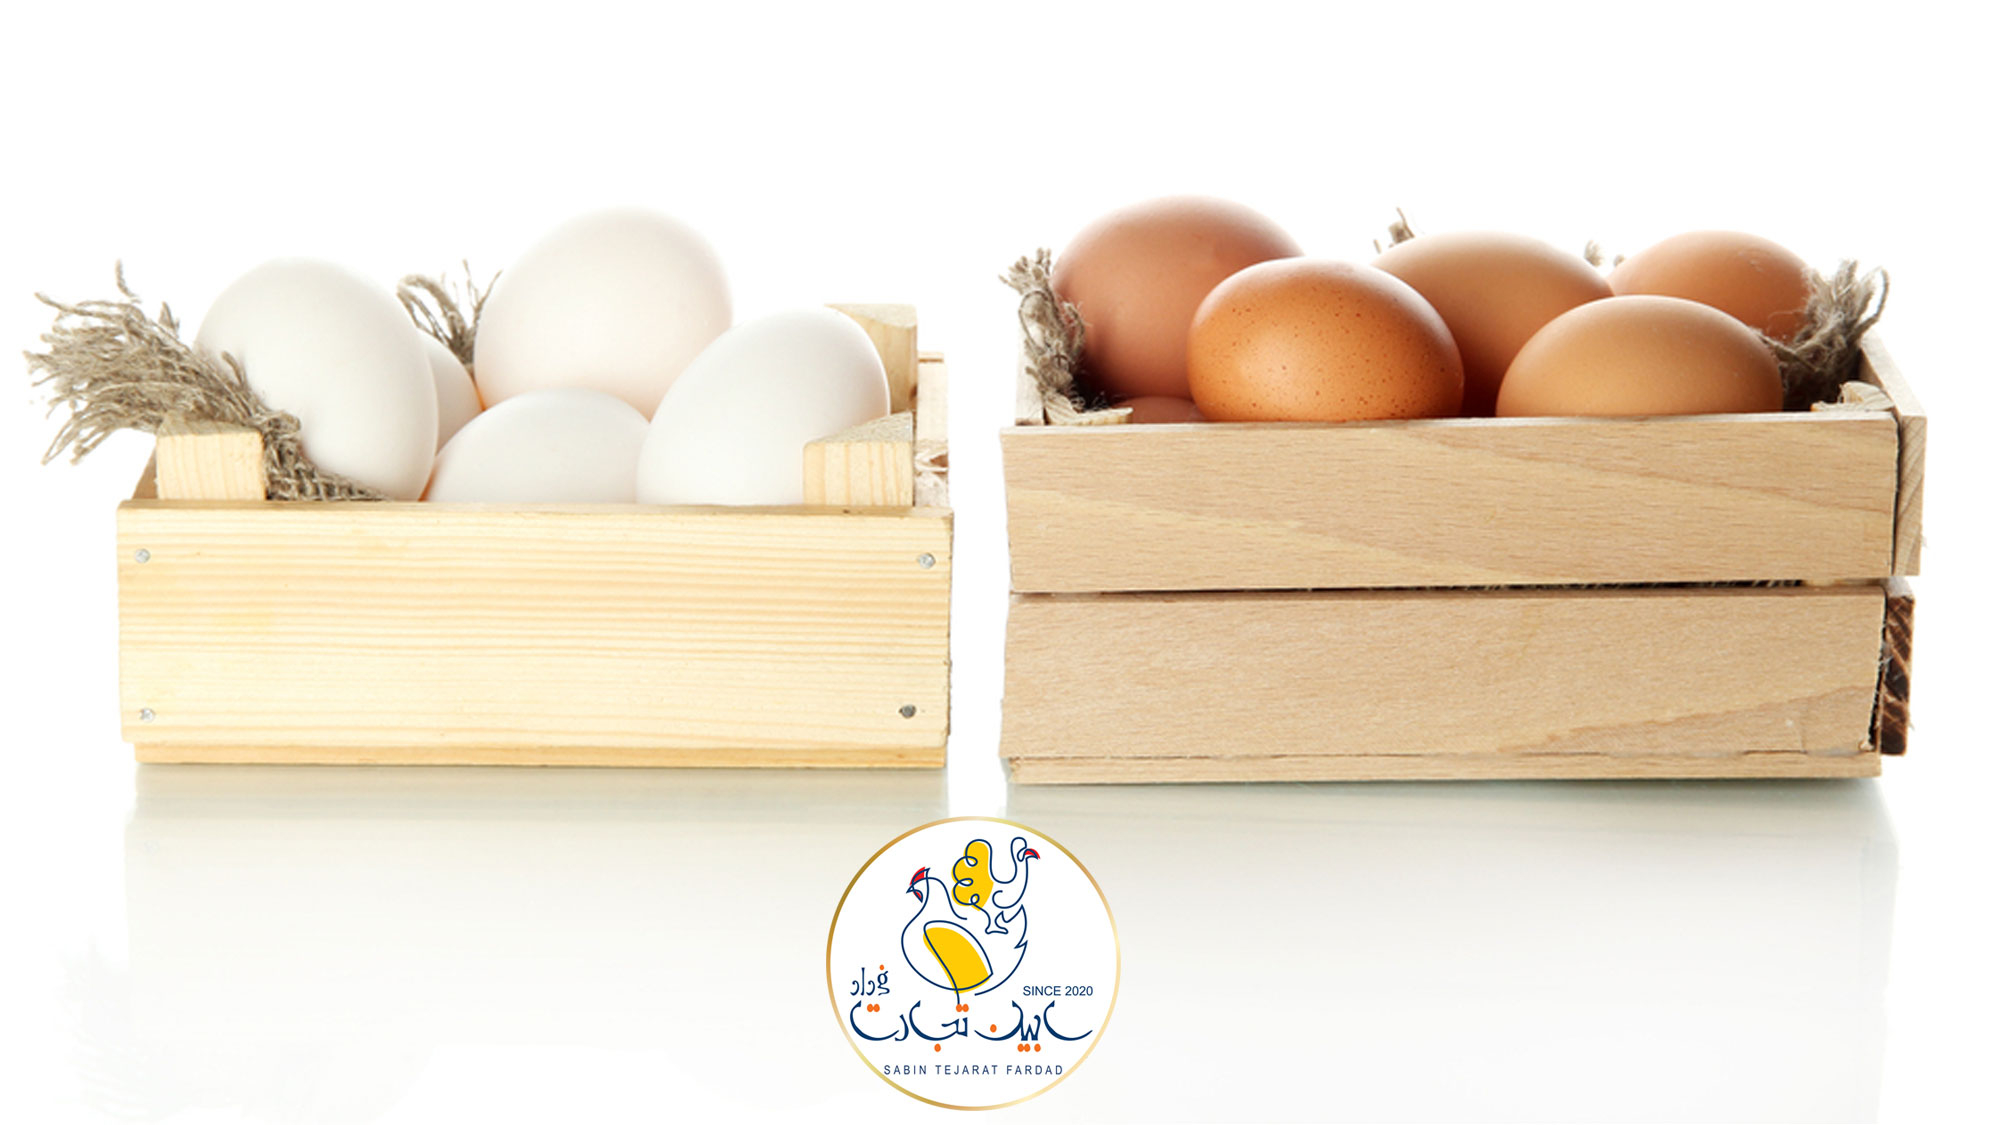 تا پایان سال حدودا 50 هزار تن تخم مرغ مازاد داریم